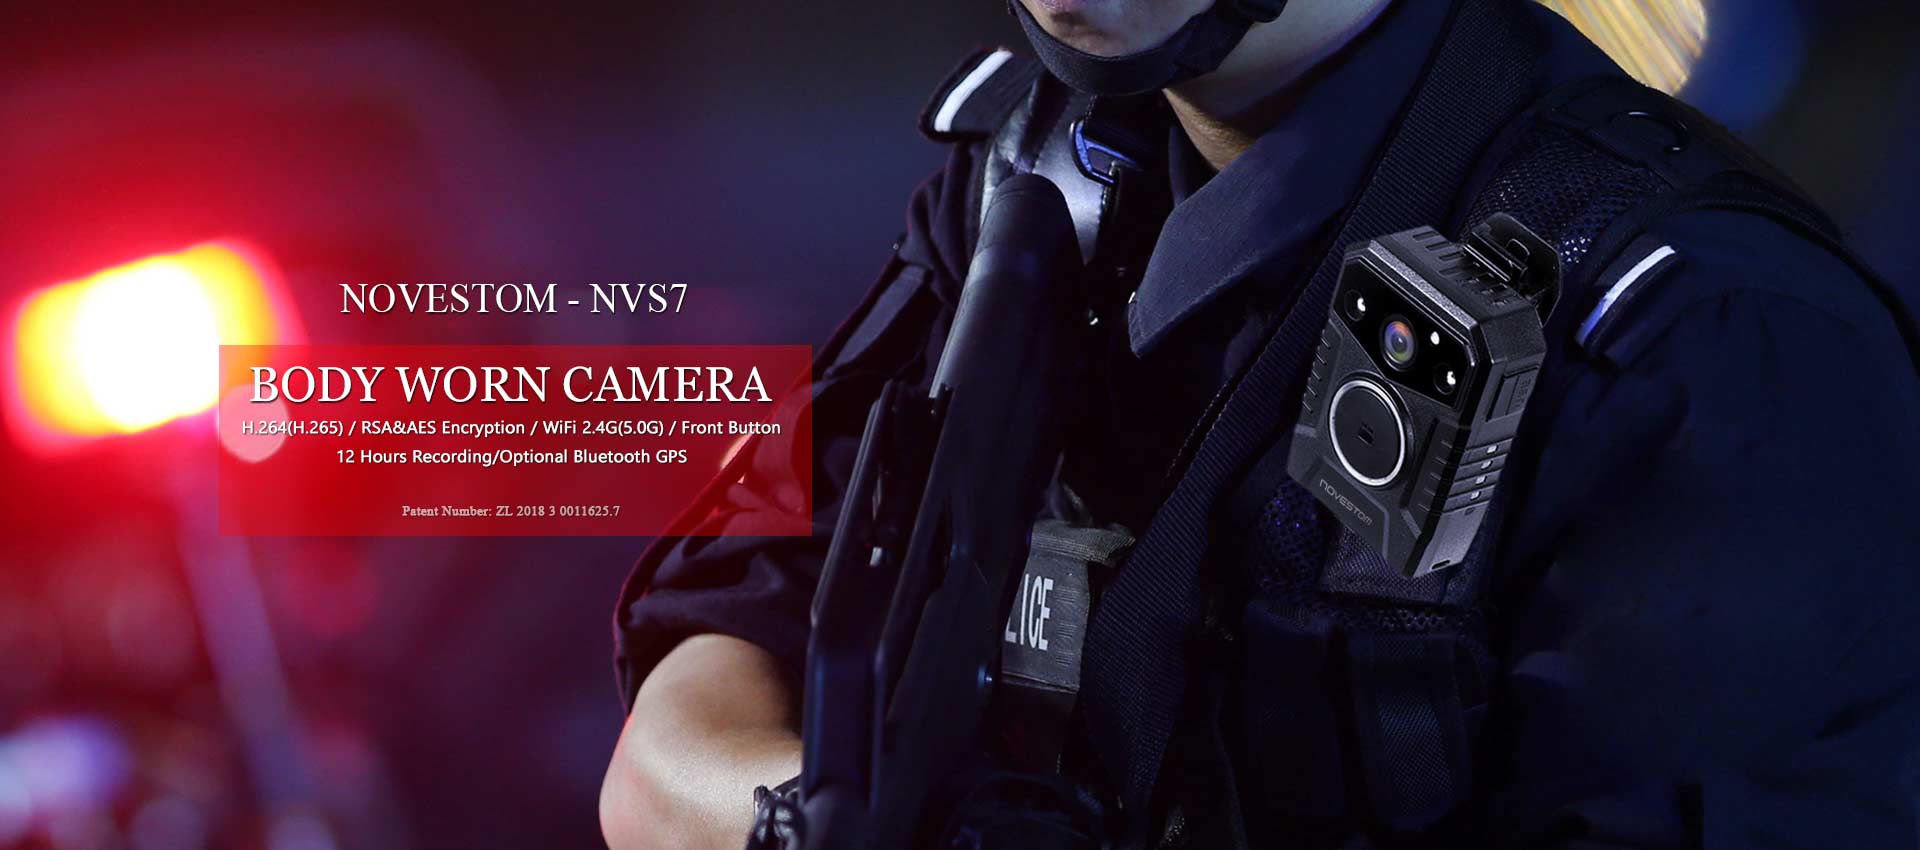 НВС7 вифи полицијске видео сигурносне камере које се носе на телу са ГПС АЕС